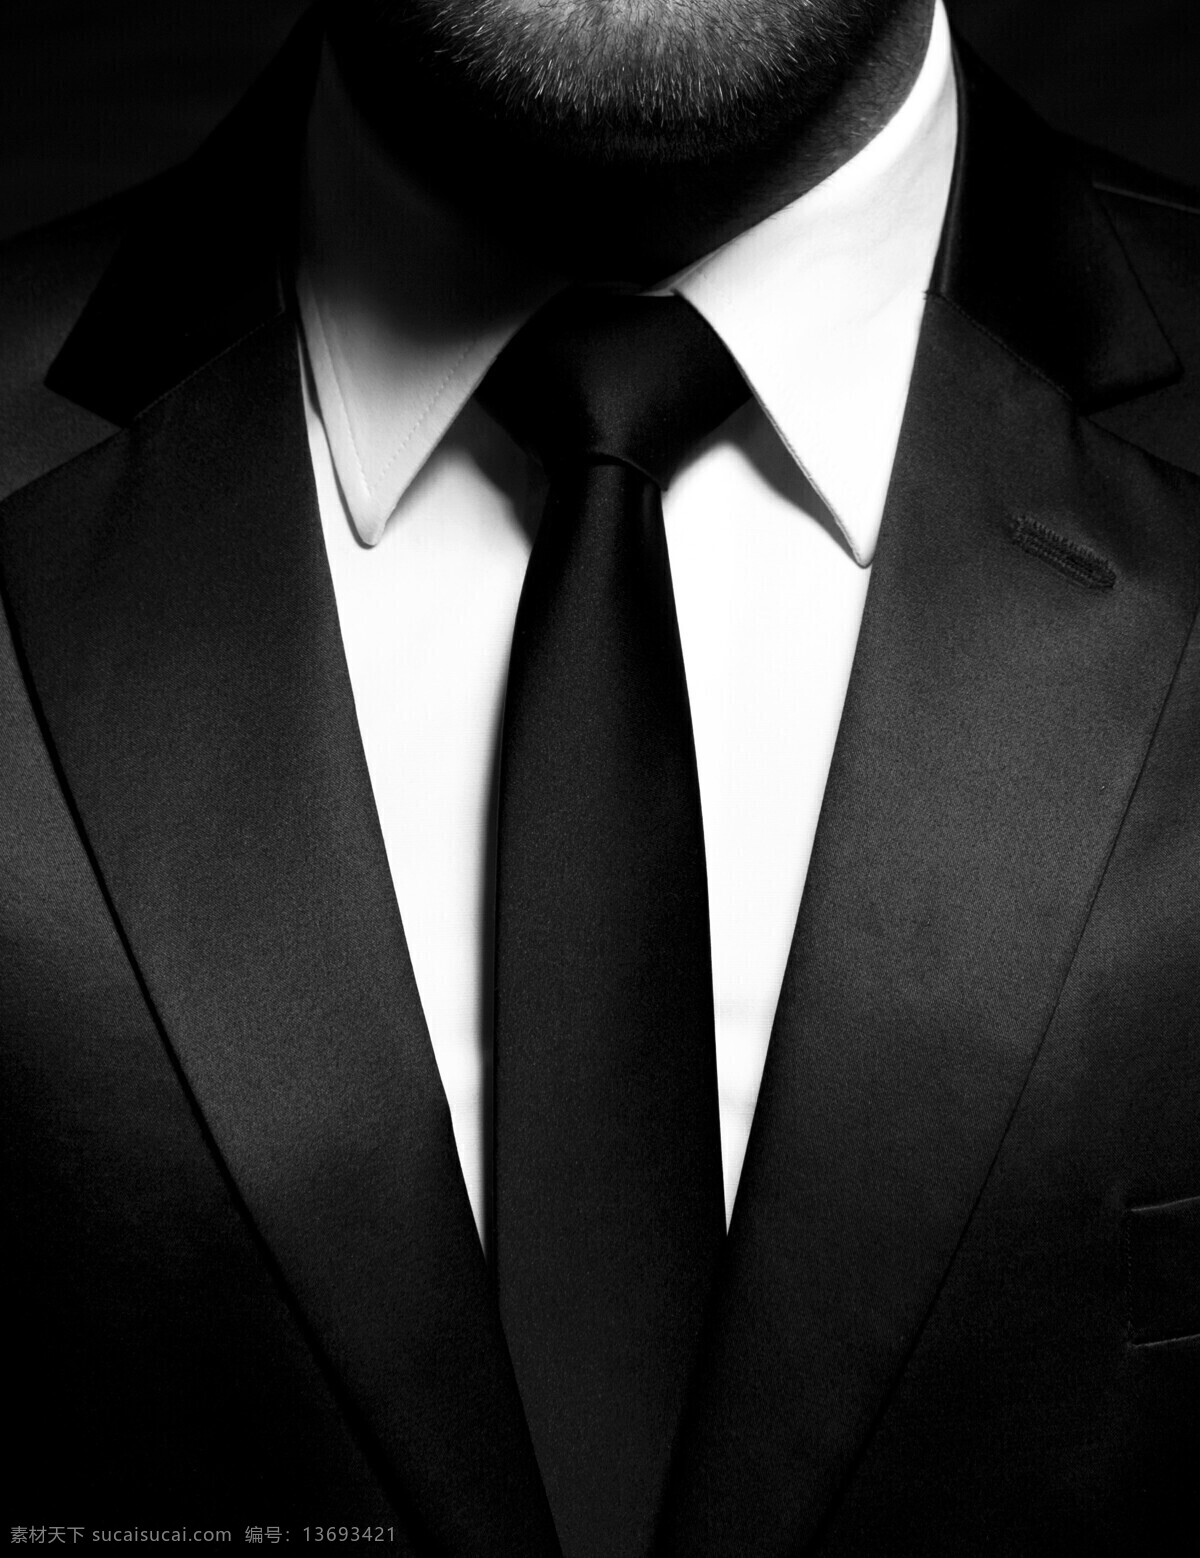 穿 西装 男士 衬衫 服饰 领结 西服 穿西装的男士 穿西服的人 白衬衫 领带 黑色